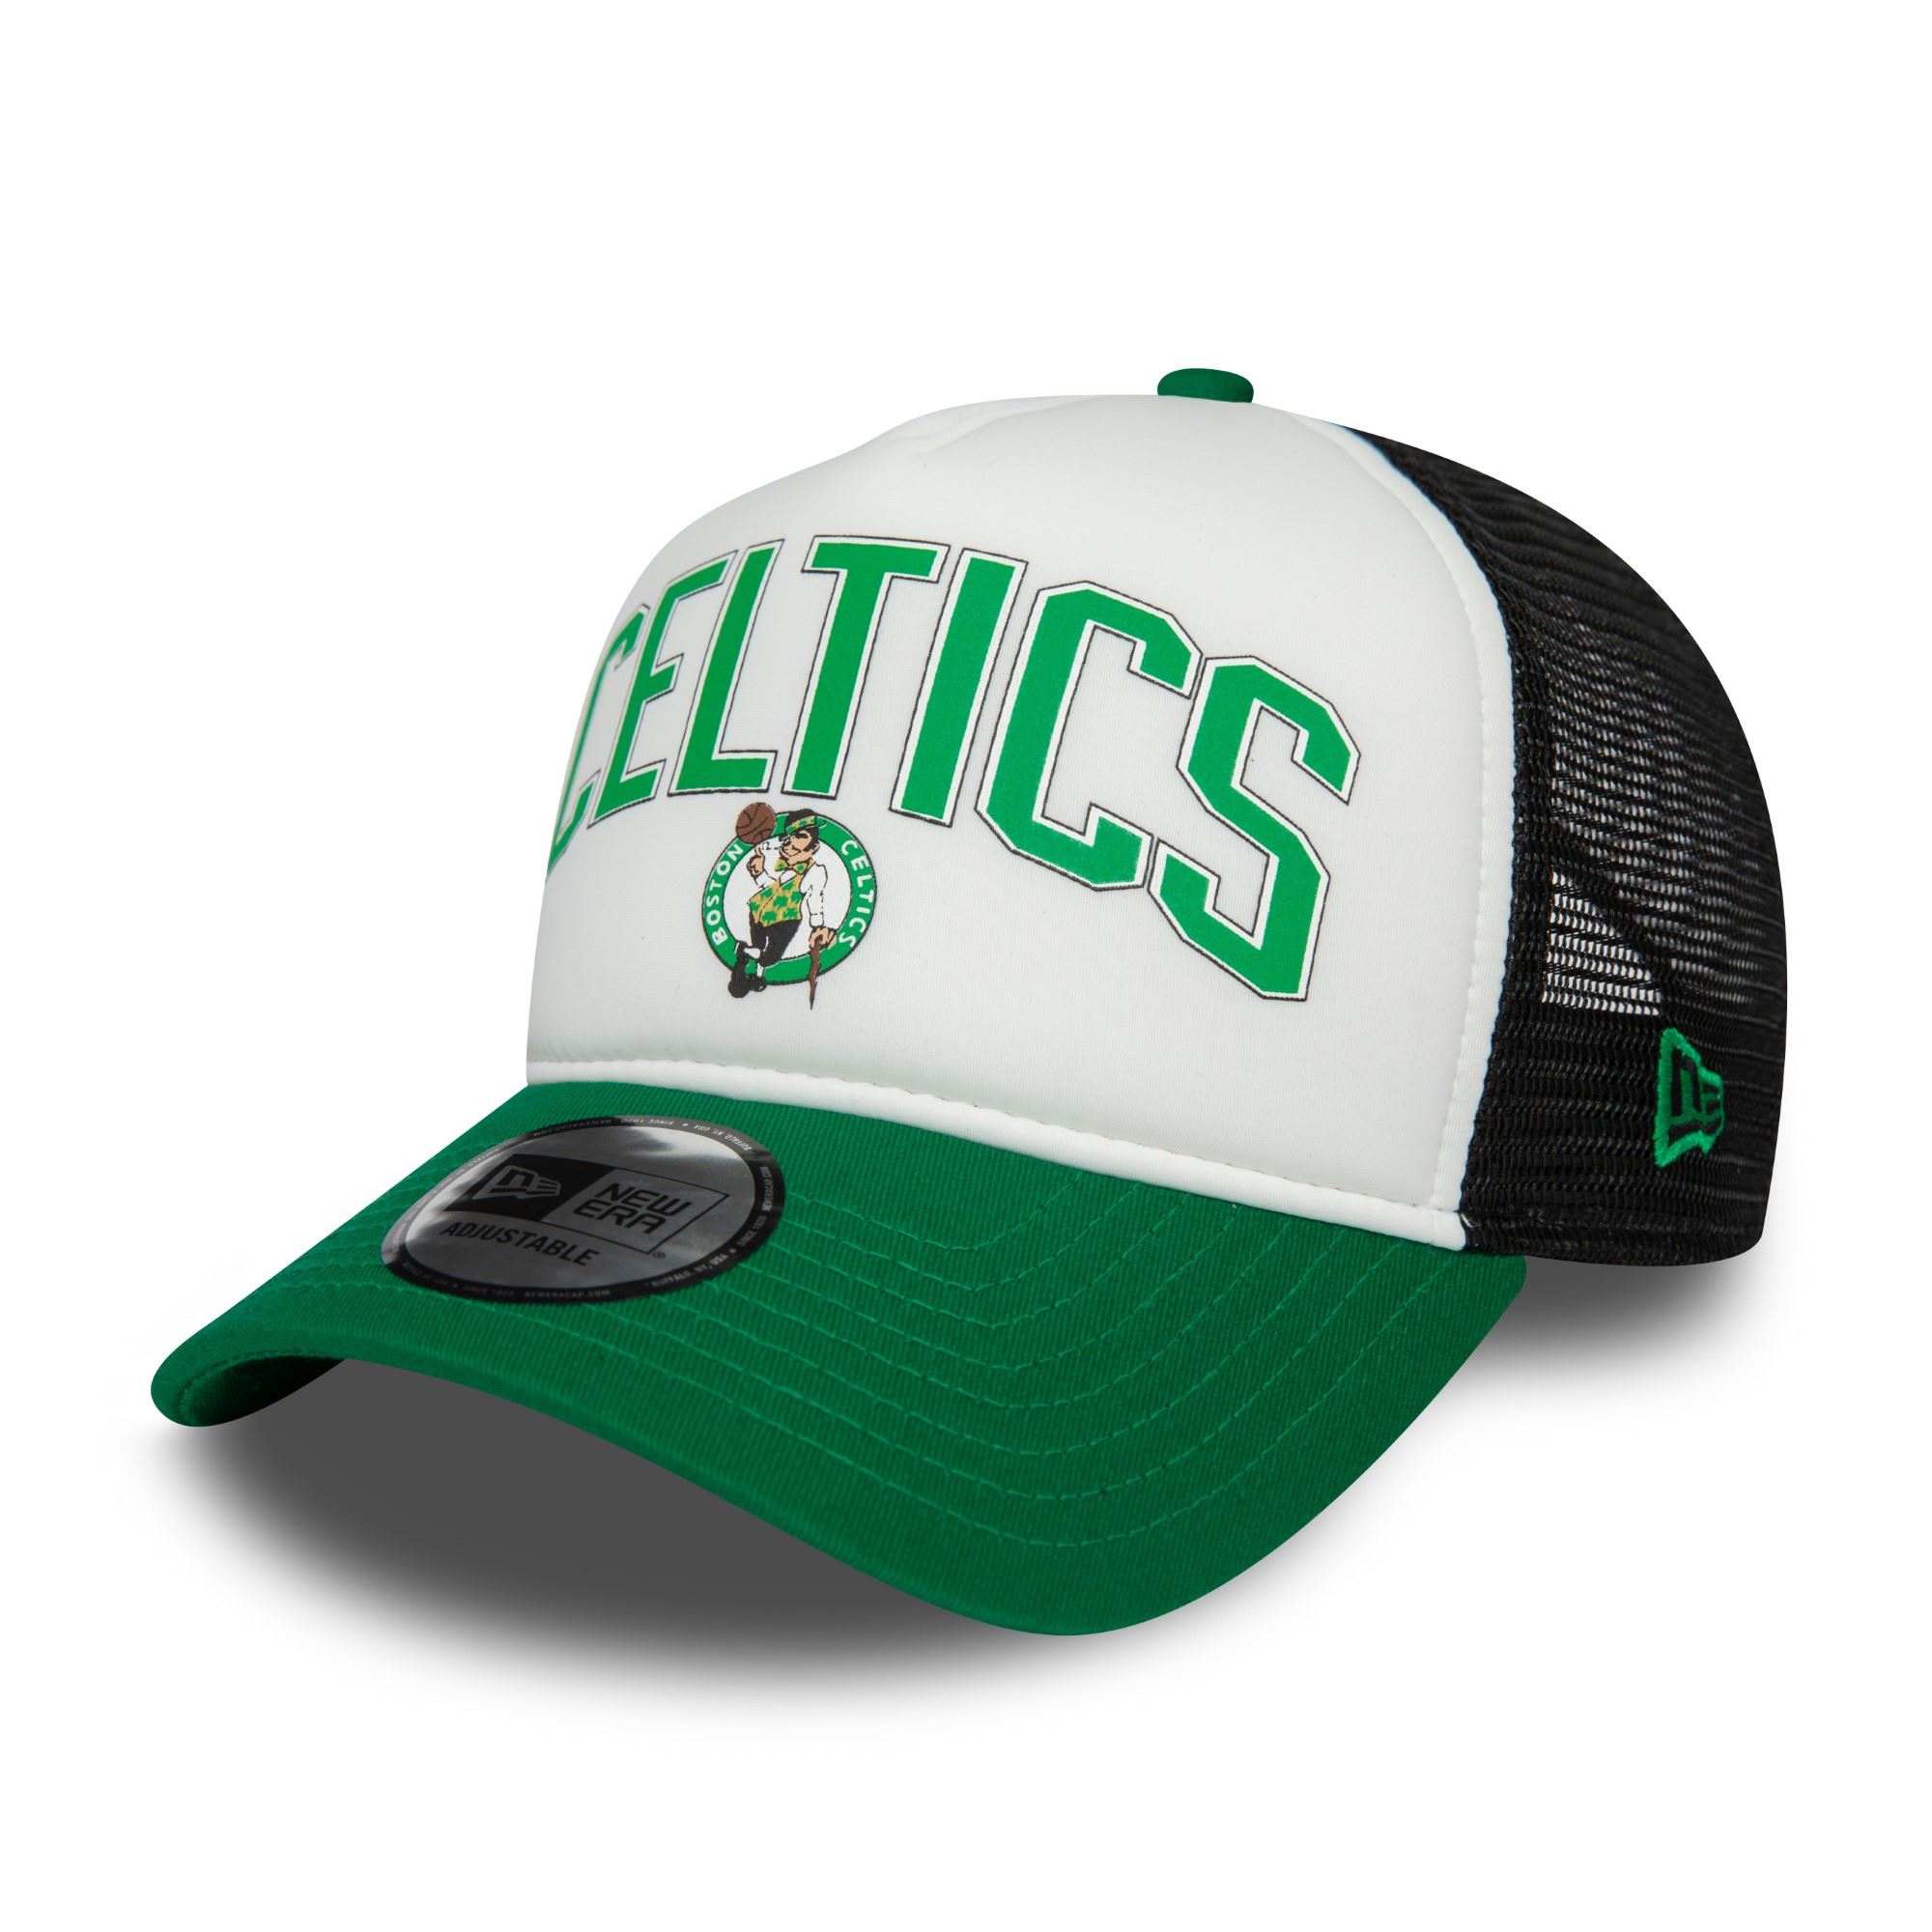 Boston Celtics NBA Retro Weiß Schwarz Grün Verstellbare A-Frame Trucker Cap New Era